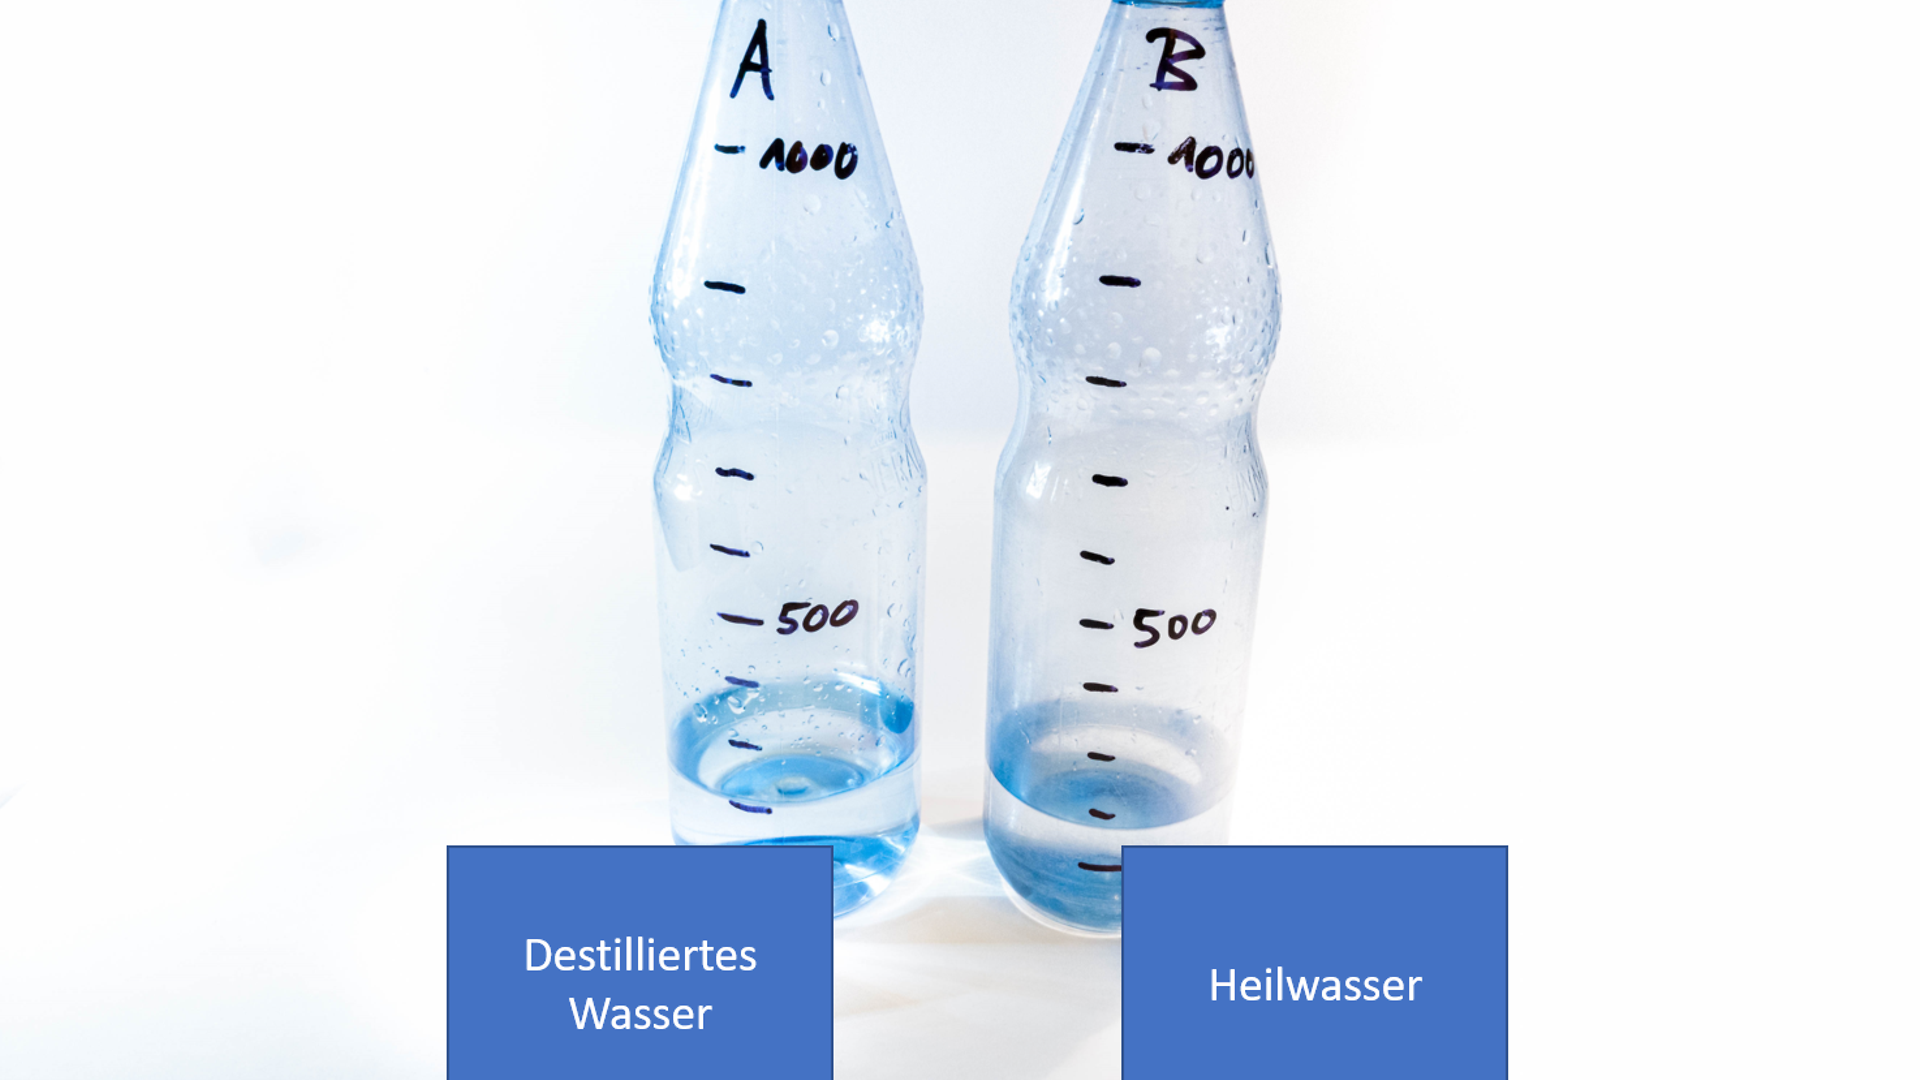 две пластиковые бутылки с образцами воды: дистиллированная вода и водопроводная вода